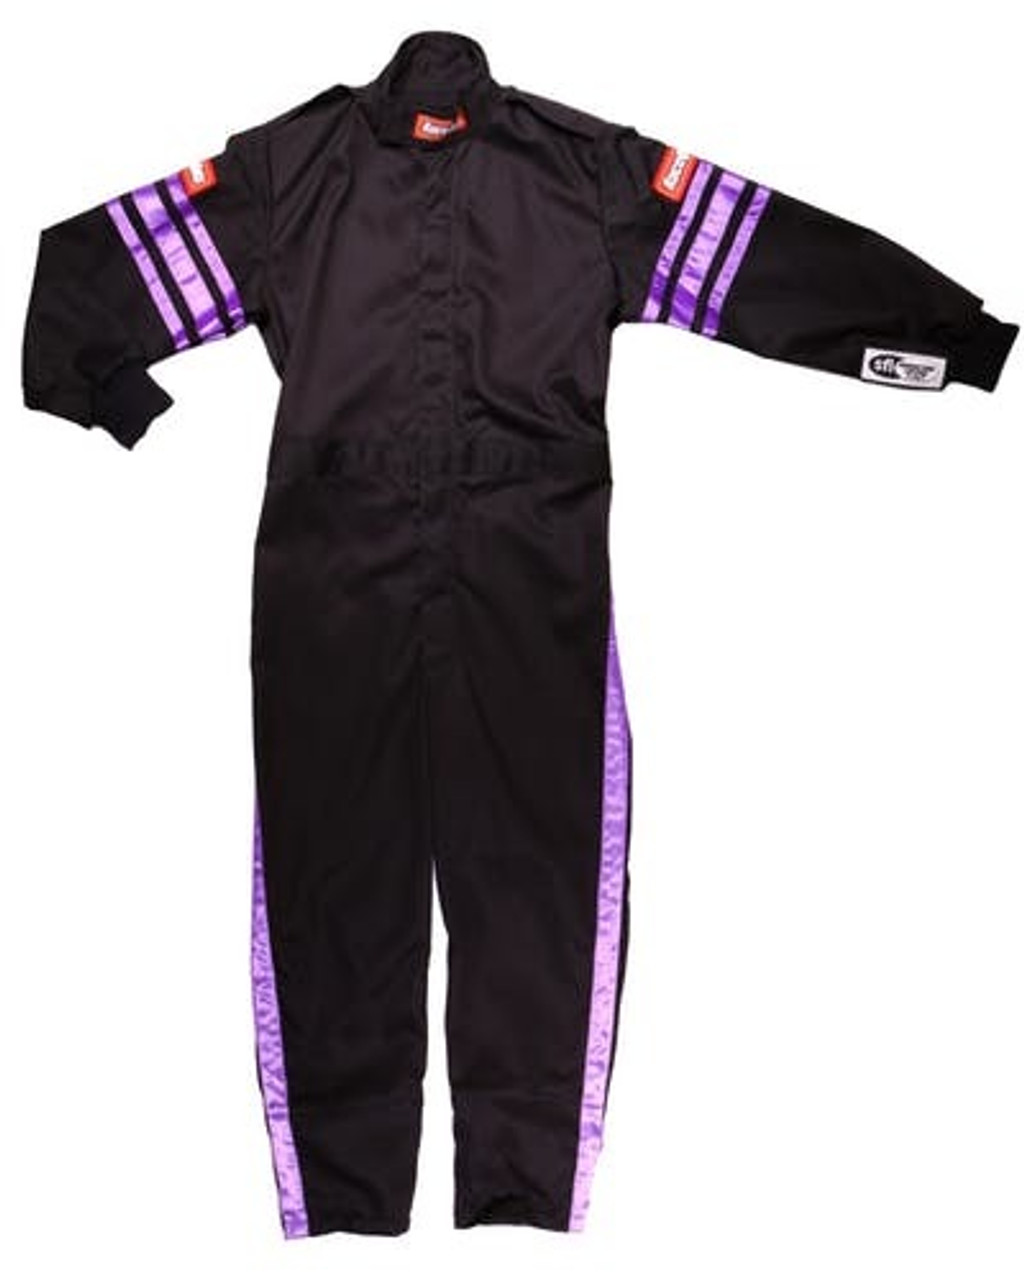 RaceQuip Black Suit Single Layer Kids Large Purple Trim